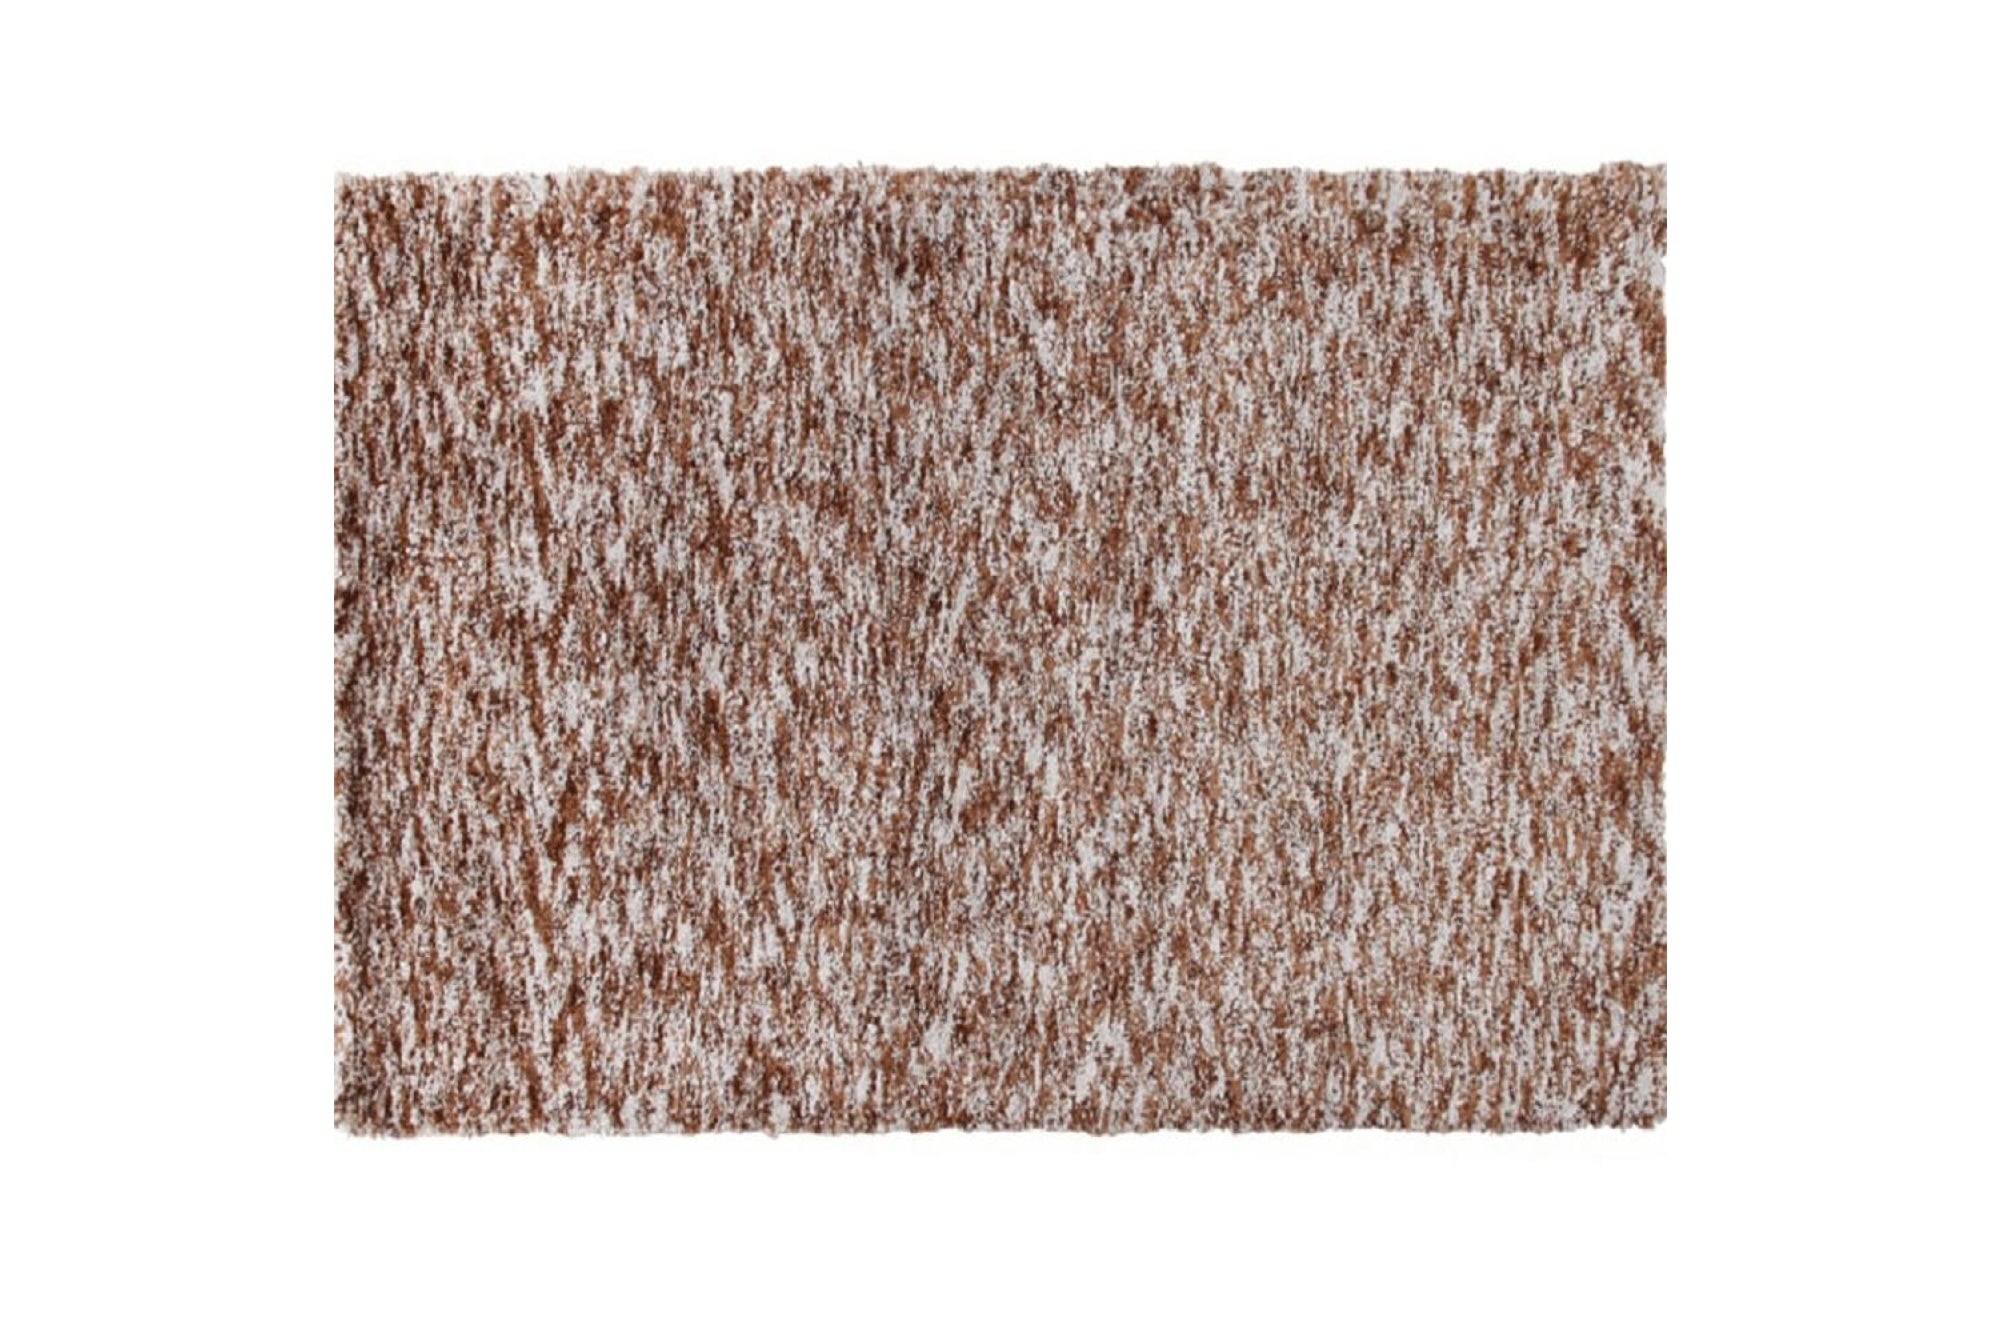 TOBY barna polyester szőnyeg 140x200cm